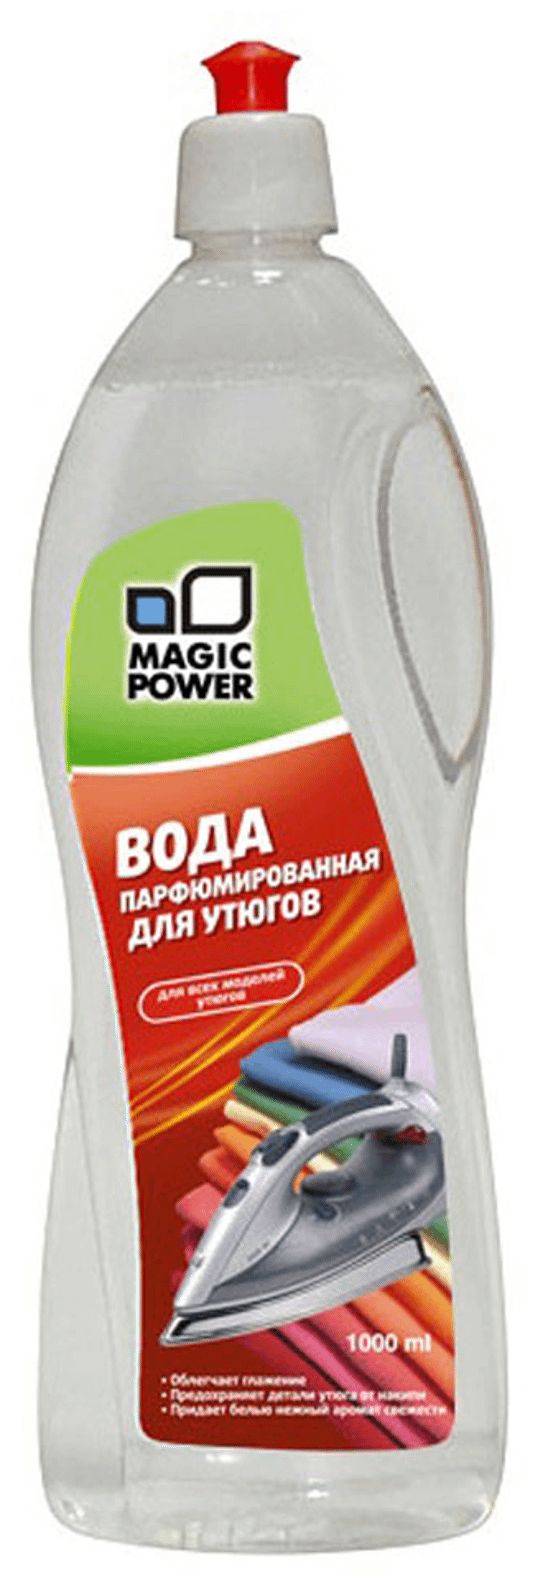 Вода парфюмированная для утюгов MAGIC POWER MP-024